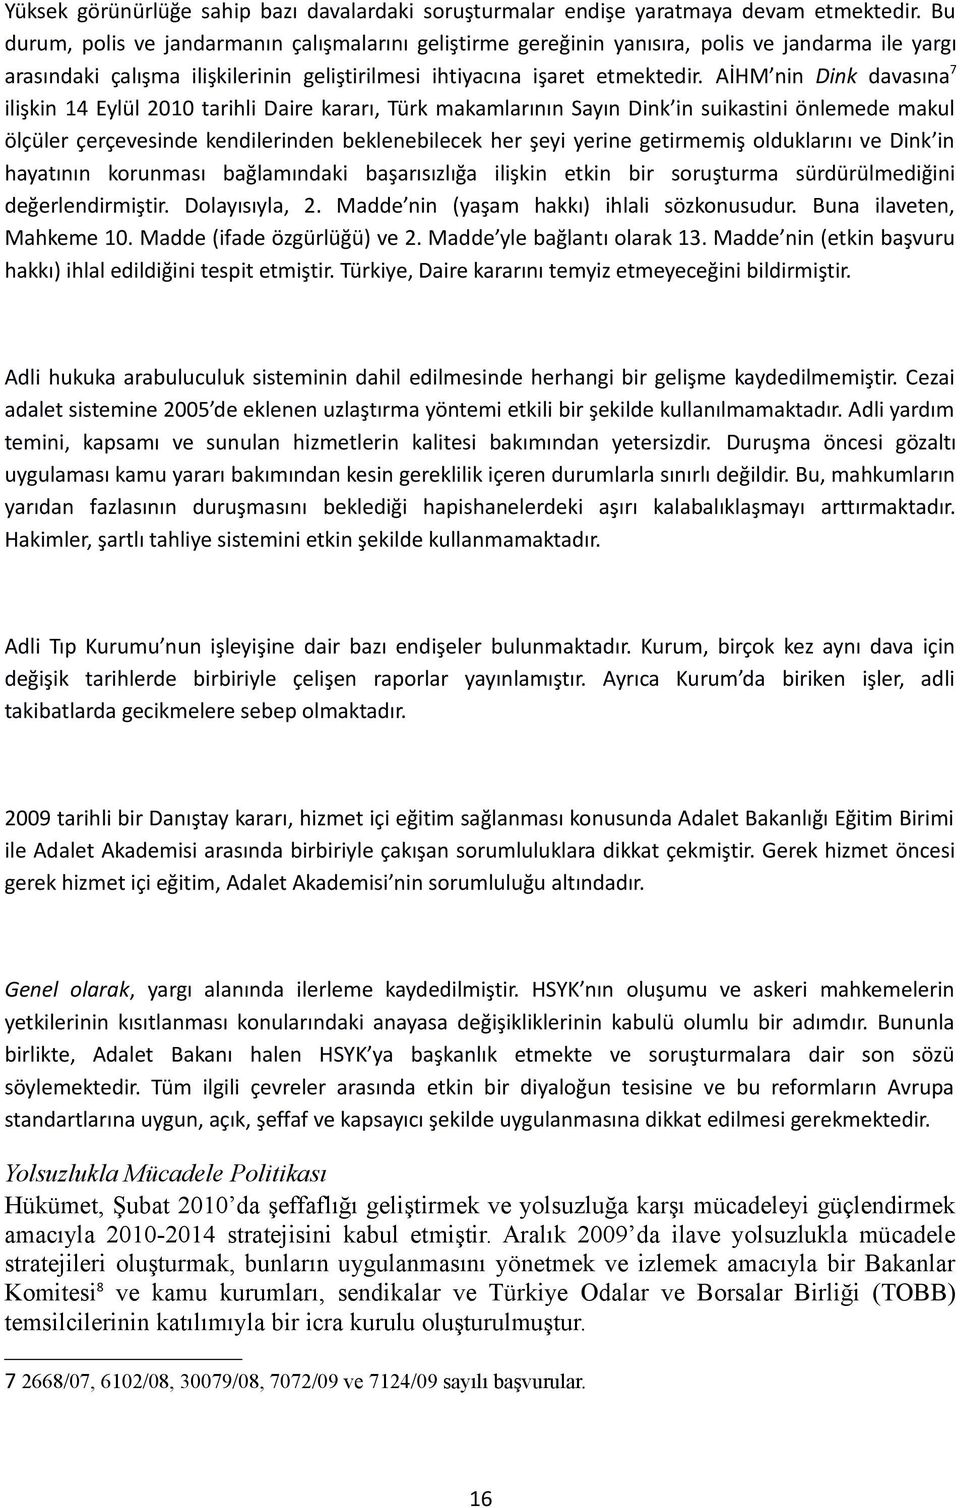 AİHM nin Dink davasına 7 ilişkin 14 Eylül 2010 tarihli Daire kararı, Türk makamlarının Sayın Dink in suikastini önlemede makul ölçüler çerçevesinde kendilerinden beklenebilecek her şeyi yerine